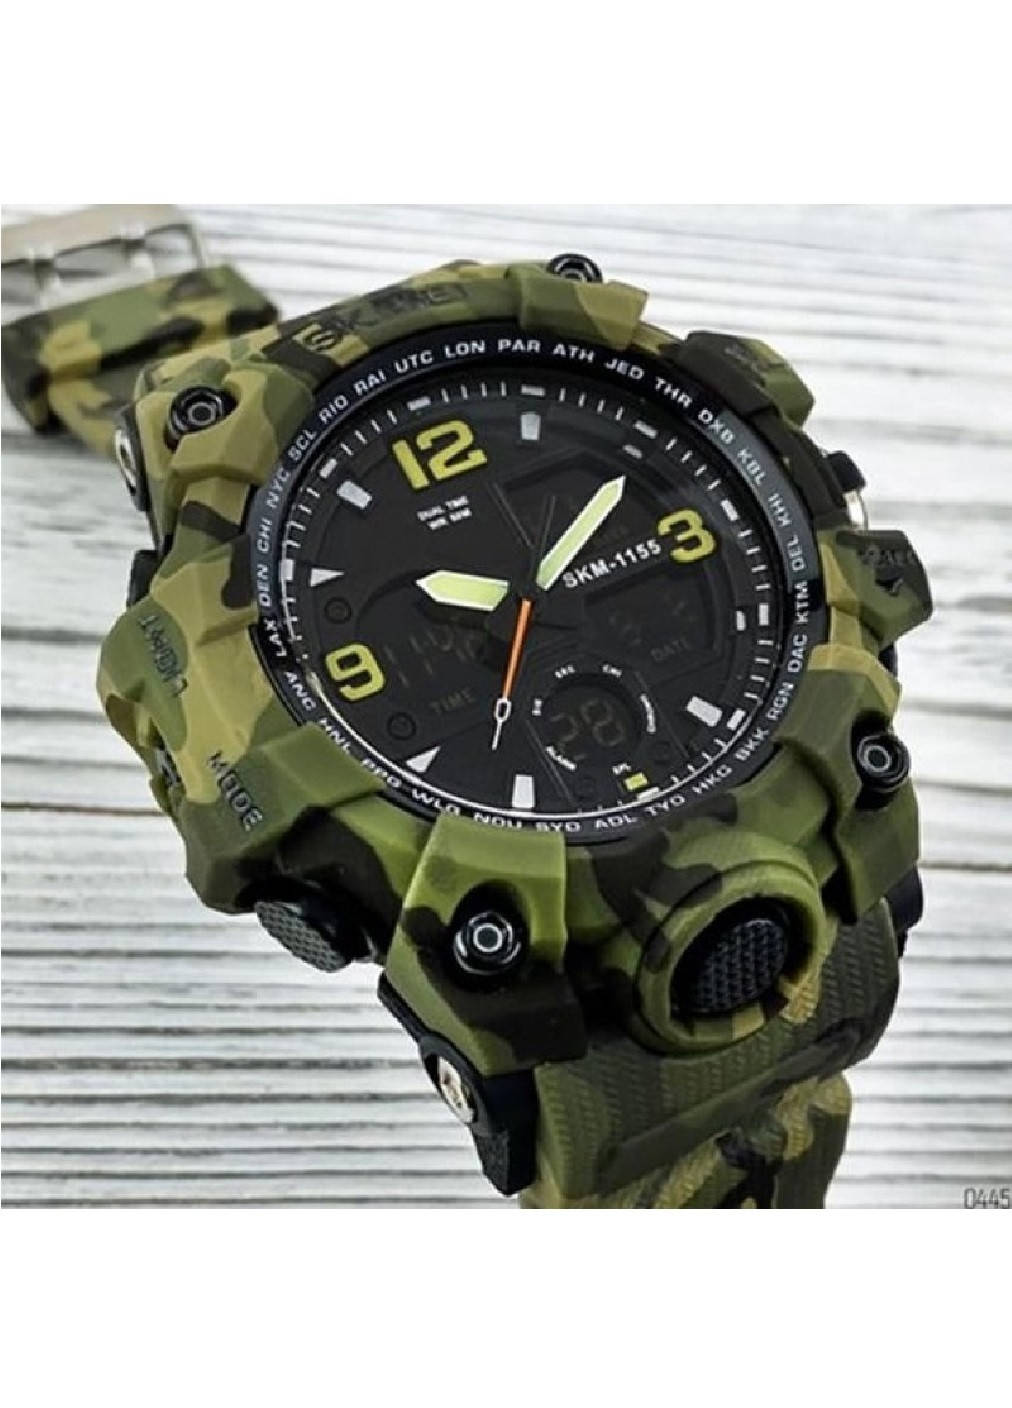 Наручные мужские спортивные часы с подсветкой таймером будильником 55х52х17 мм (475946-Prob) Зеленый камуфляж Unbranded (275068625)